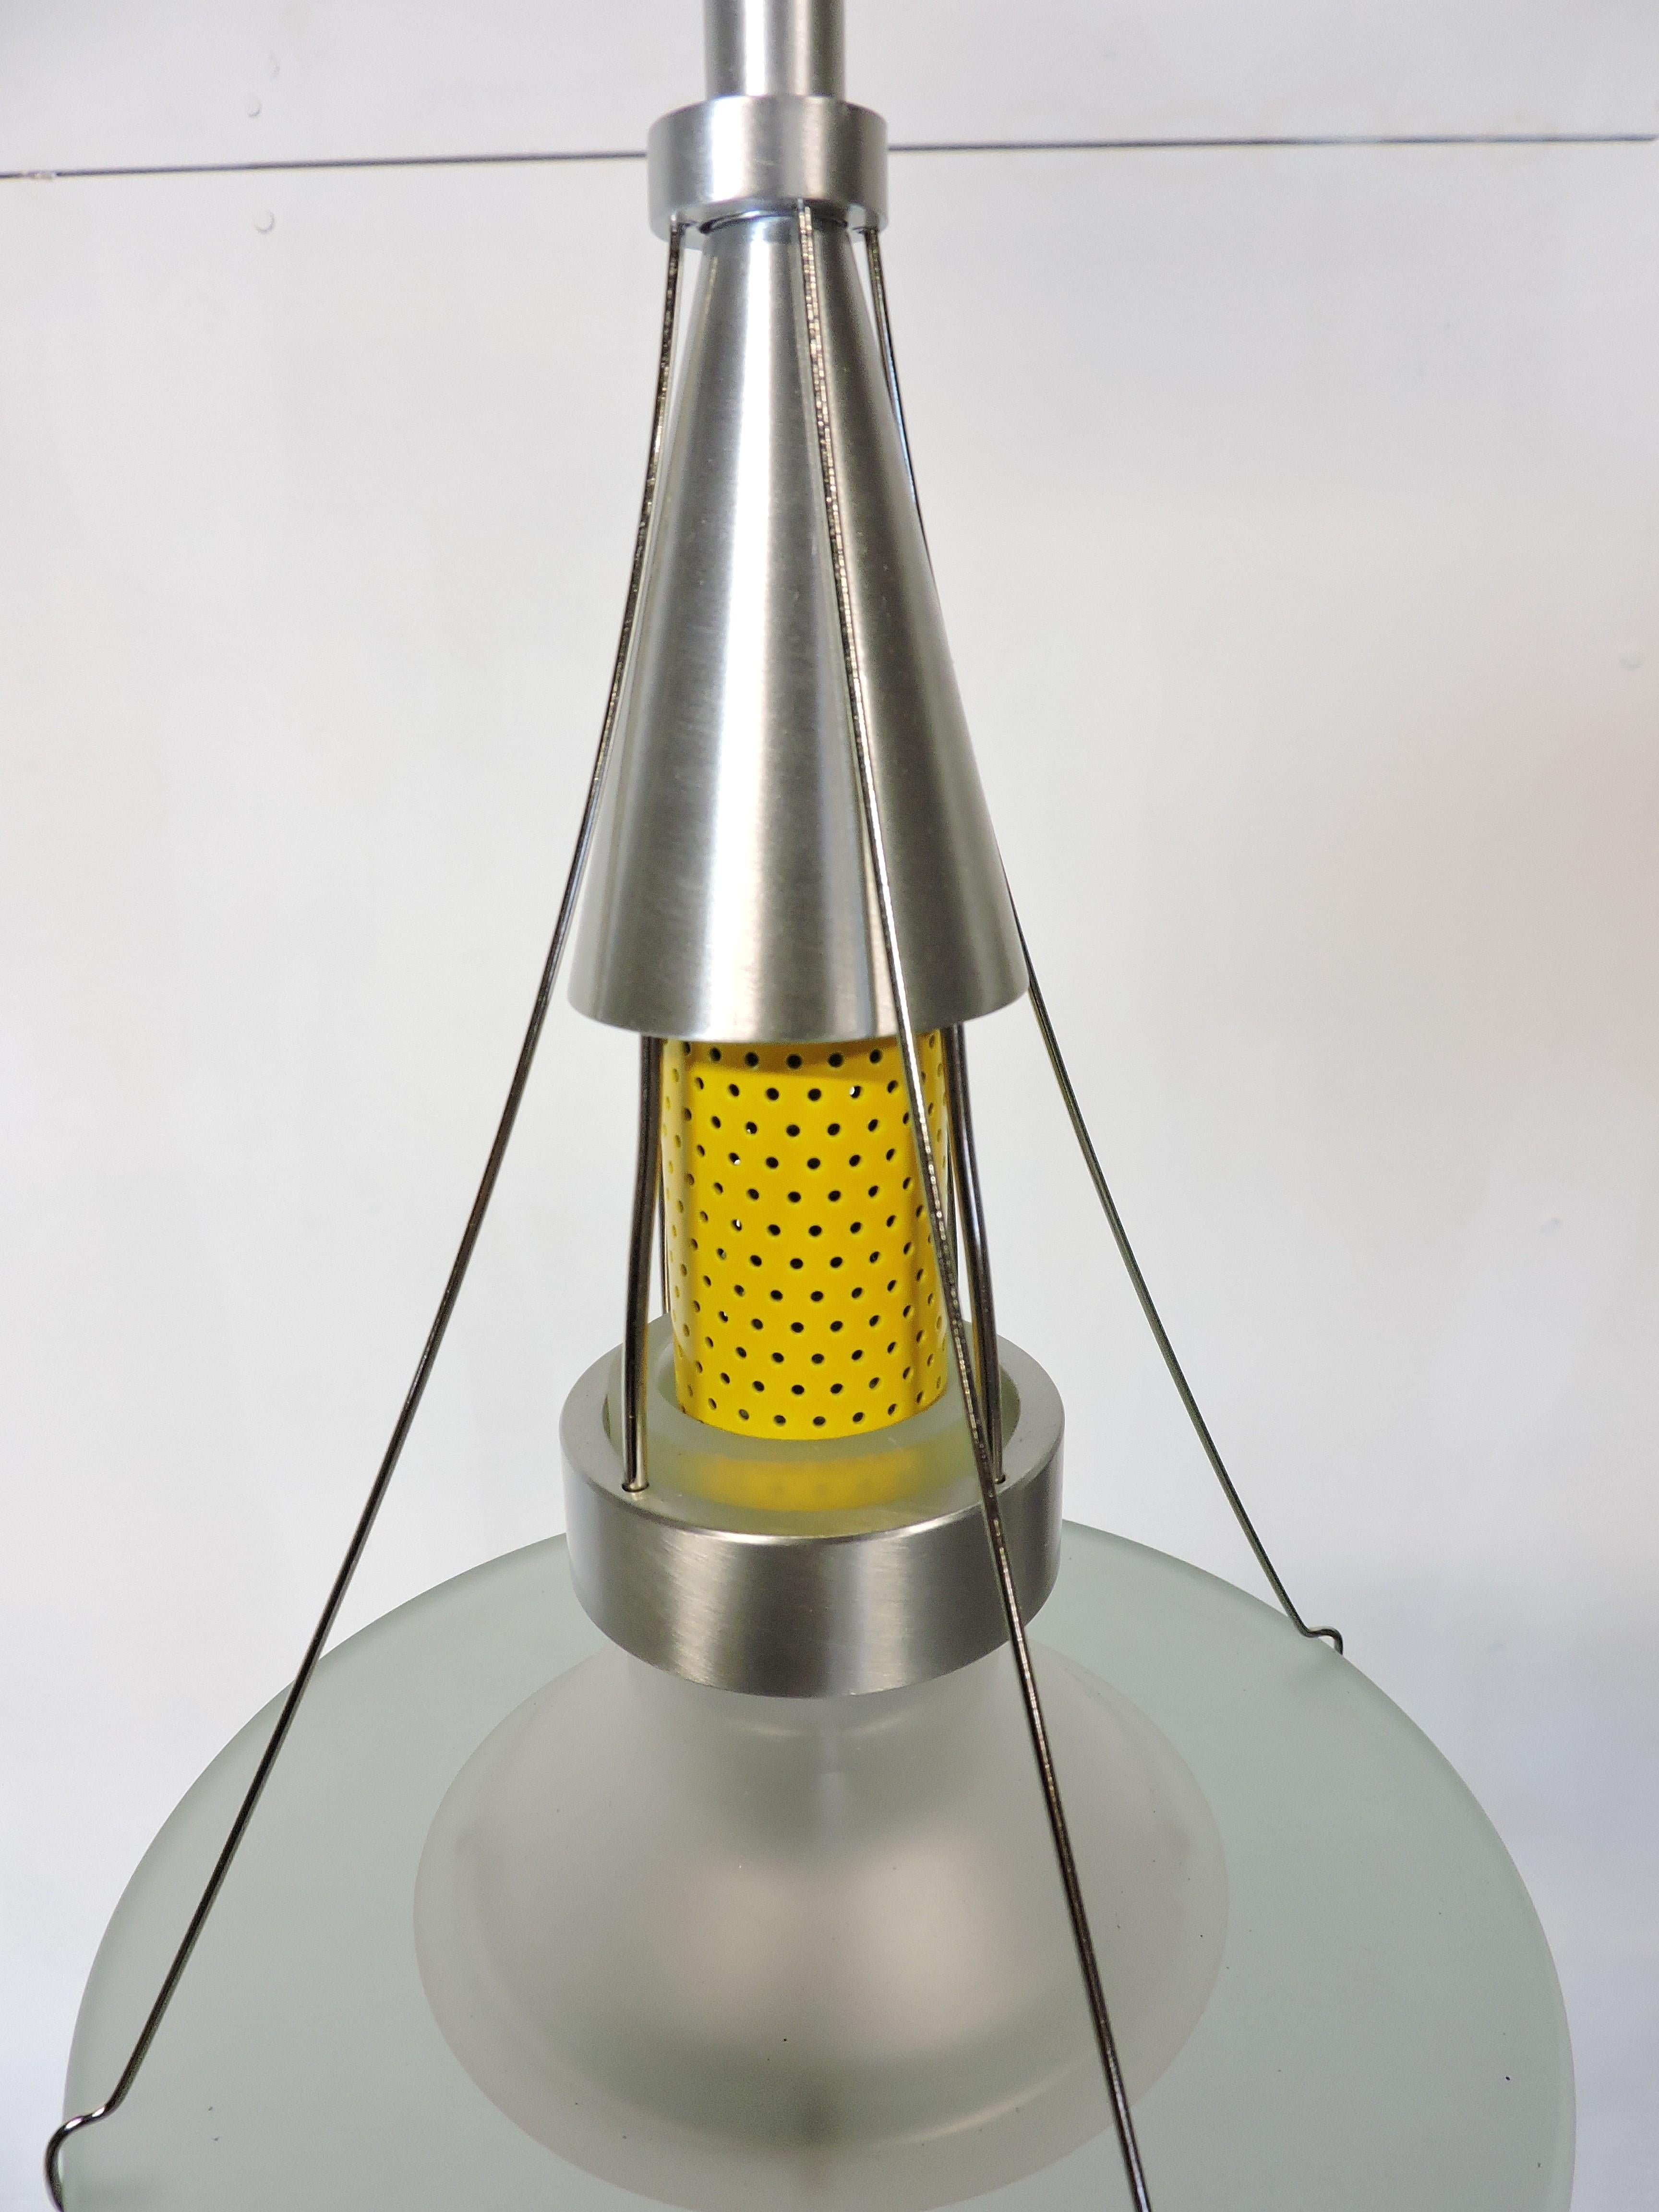 Chinese Robert Sonneman NOS Ventilator Series Postmodern Pendant Light For Sale